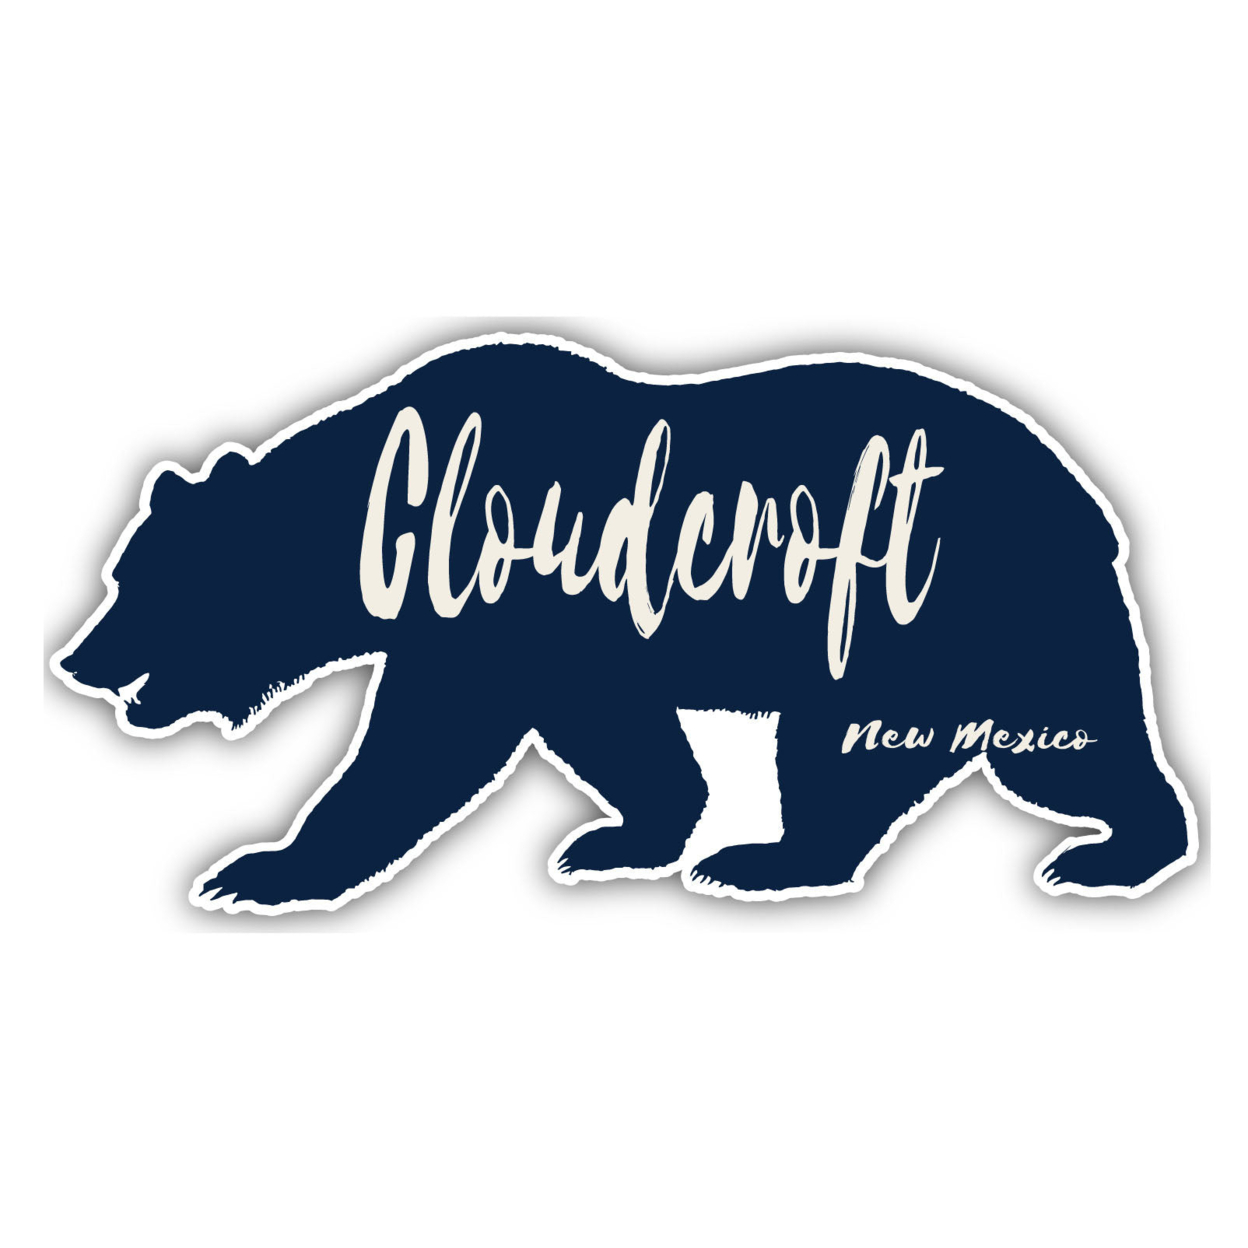 Cloudcroft New Mexico Souvenir Decorative Stickers (Choose Theme And Size) - Single Unit, 12-Inch, Tent